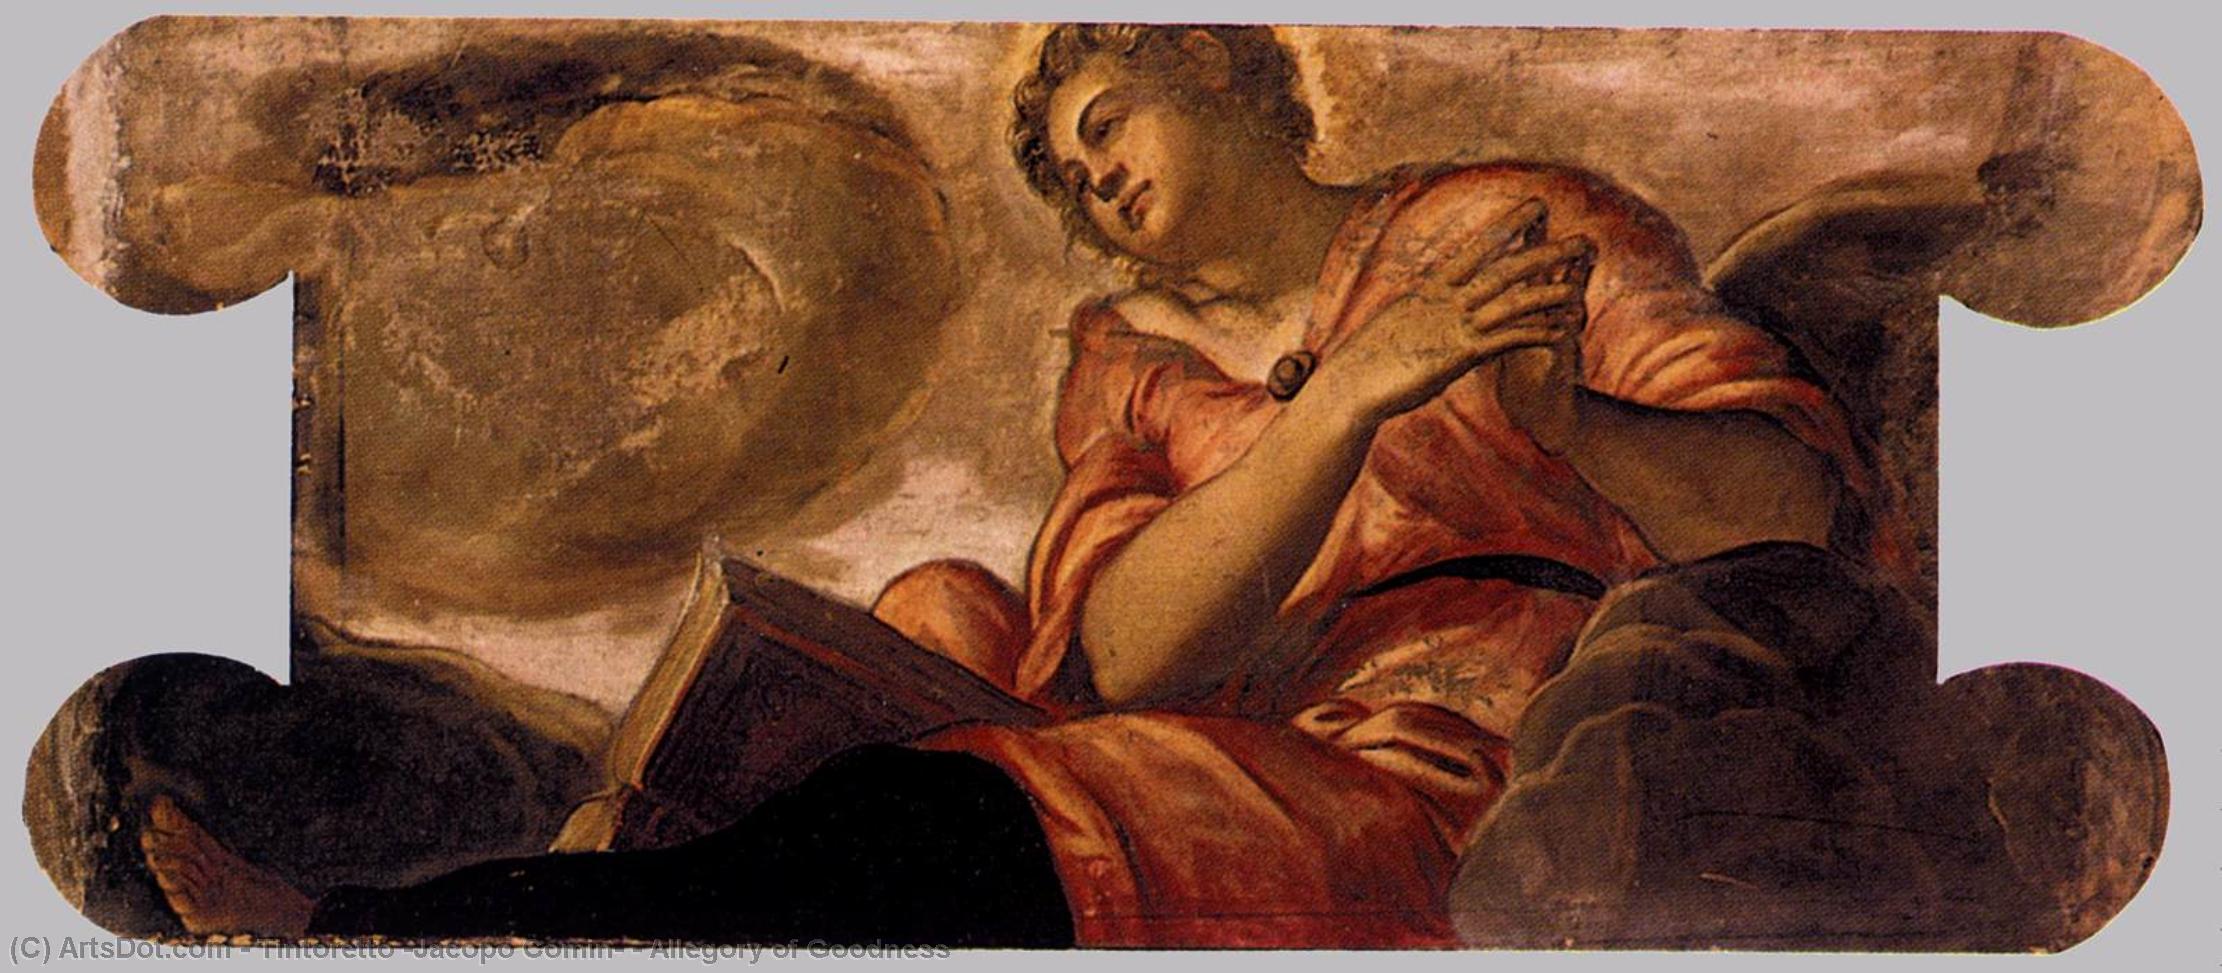 Wikioo.org - Bách khoa toàn thư về mỹ thuật - Vẽ tranh, Tác phẩm nghệ thuật Tintoretto (Jacopo Comin) - Allegory of Goodness